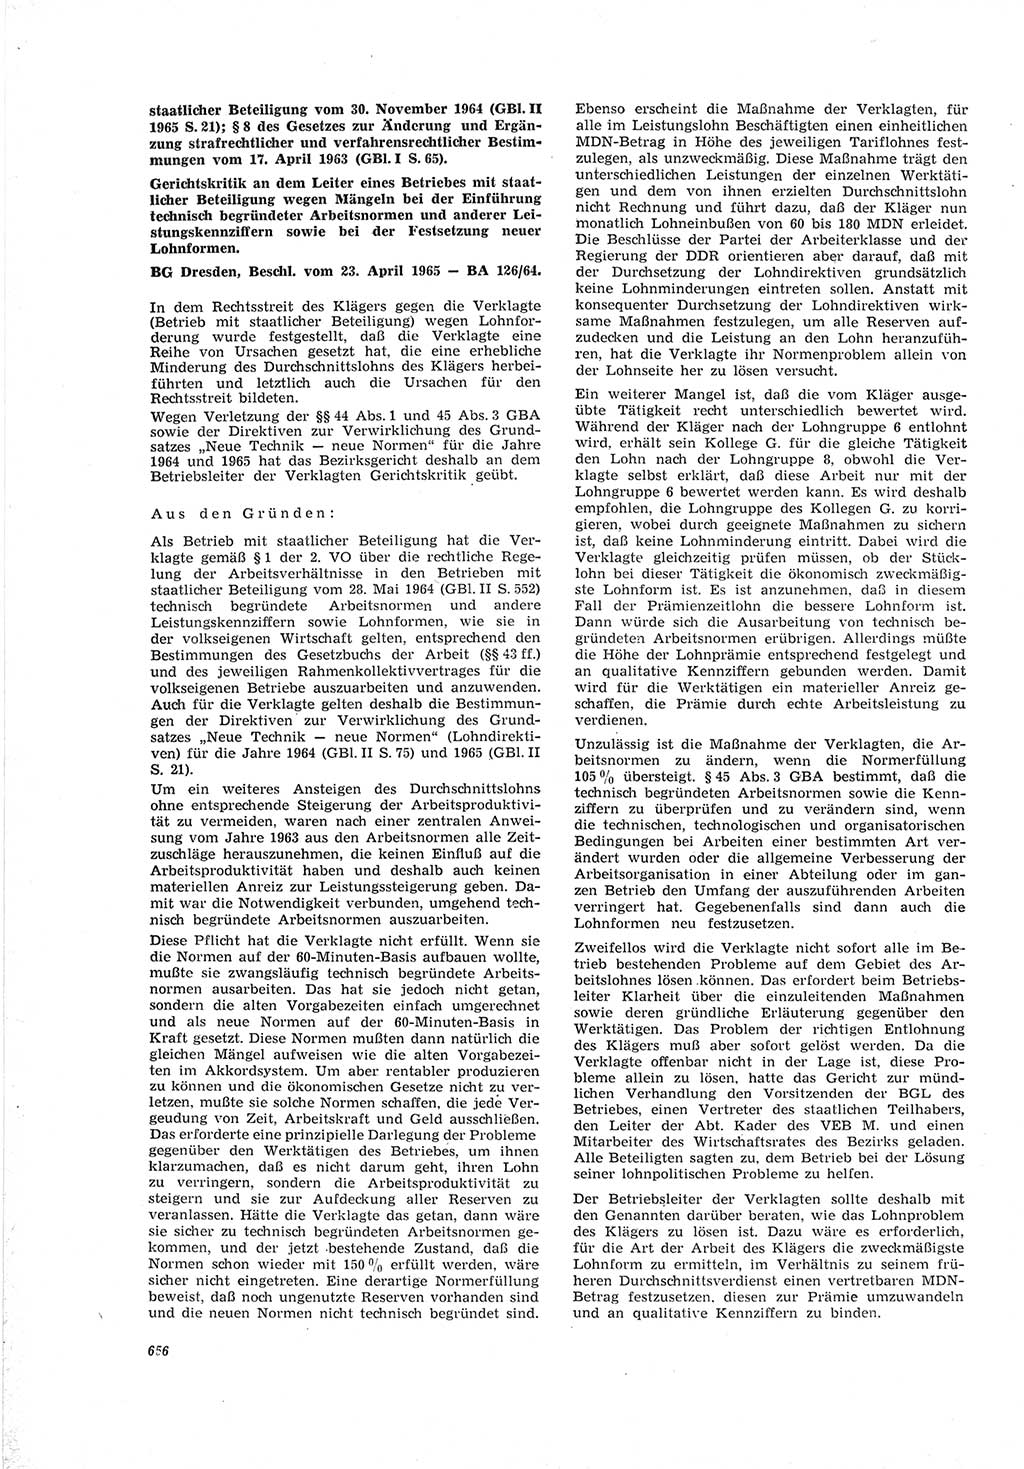 Neue Justiz (NJ), Zeitschrift für Recht und Rechtswissenschaft [Deutsche Demokratische Republik (DDR)], 19. Jahrgang 1965, Seite 656 (NJ DDR 1965, S. 656)